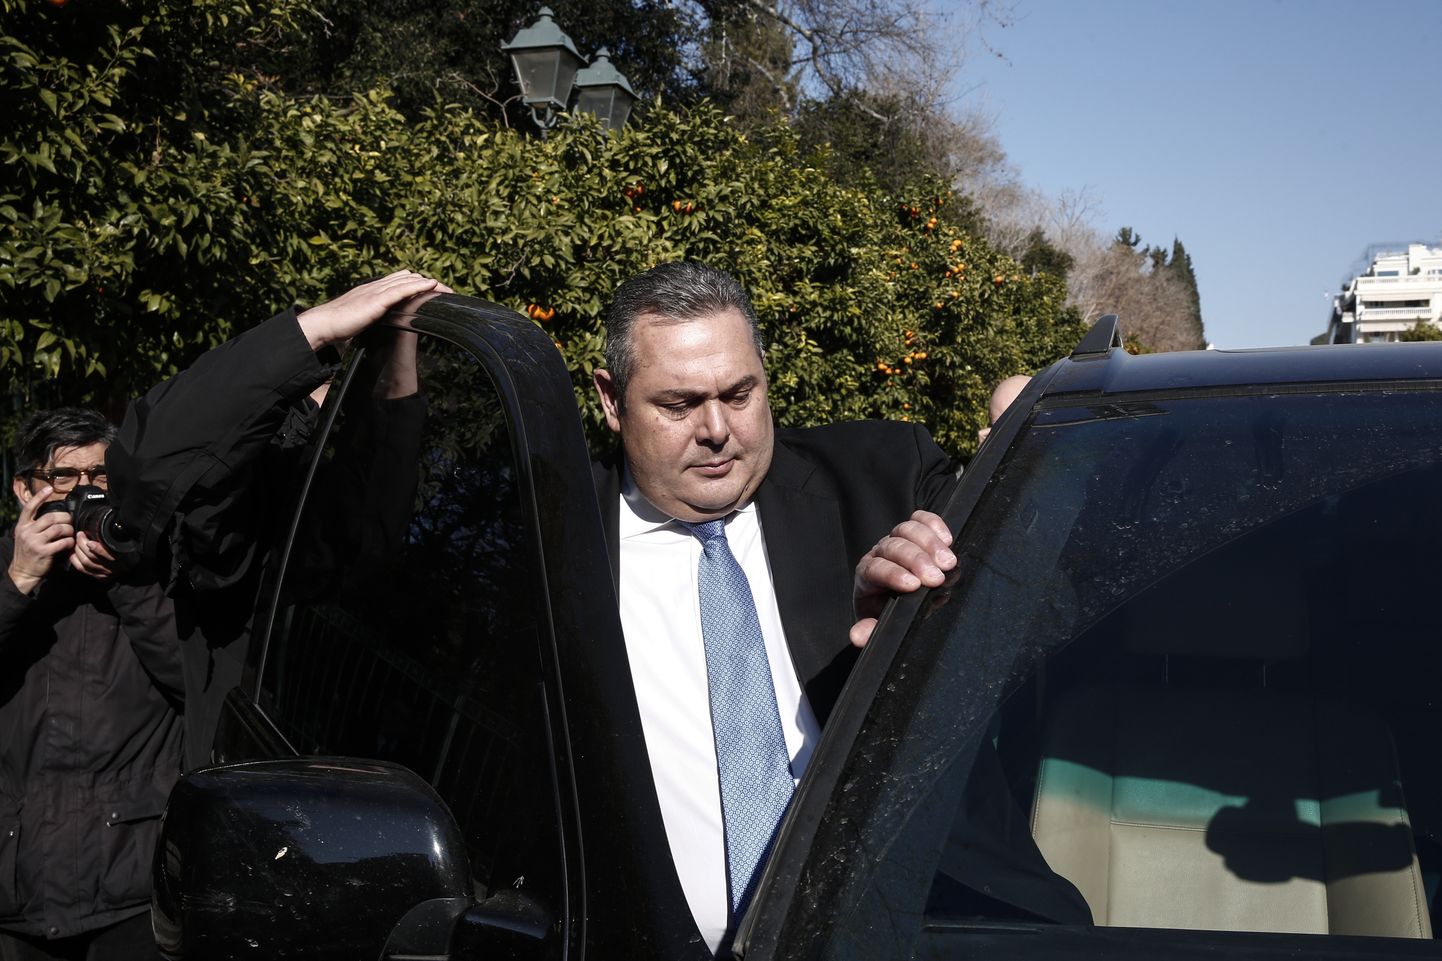 Kreeka kaitseminister Panos Kammenos lahkumas täna hommikul kohtumiselt peaminister Aléxis Tsíprasega.